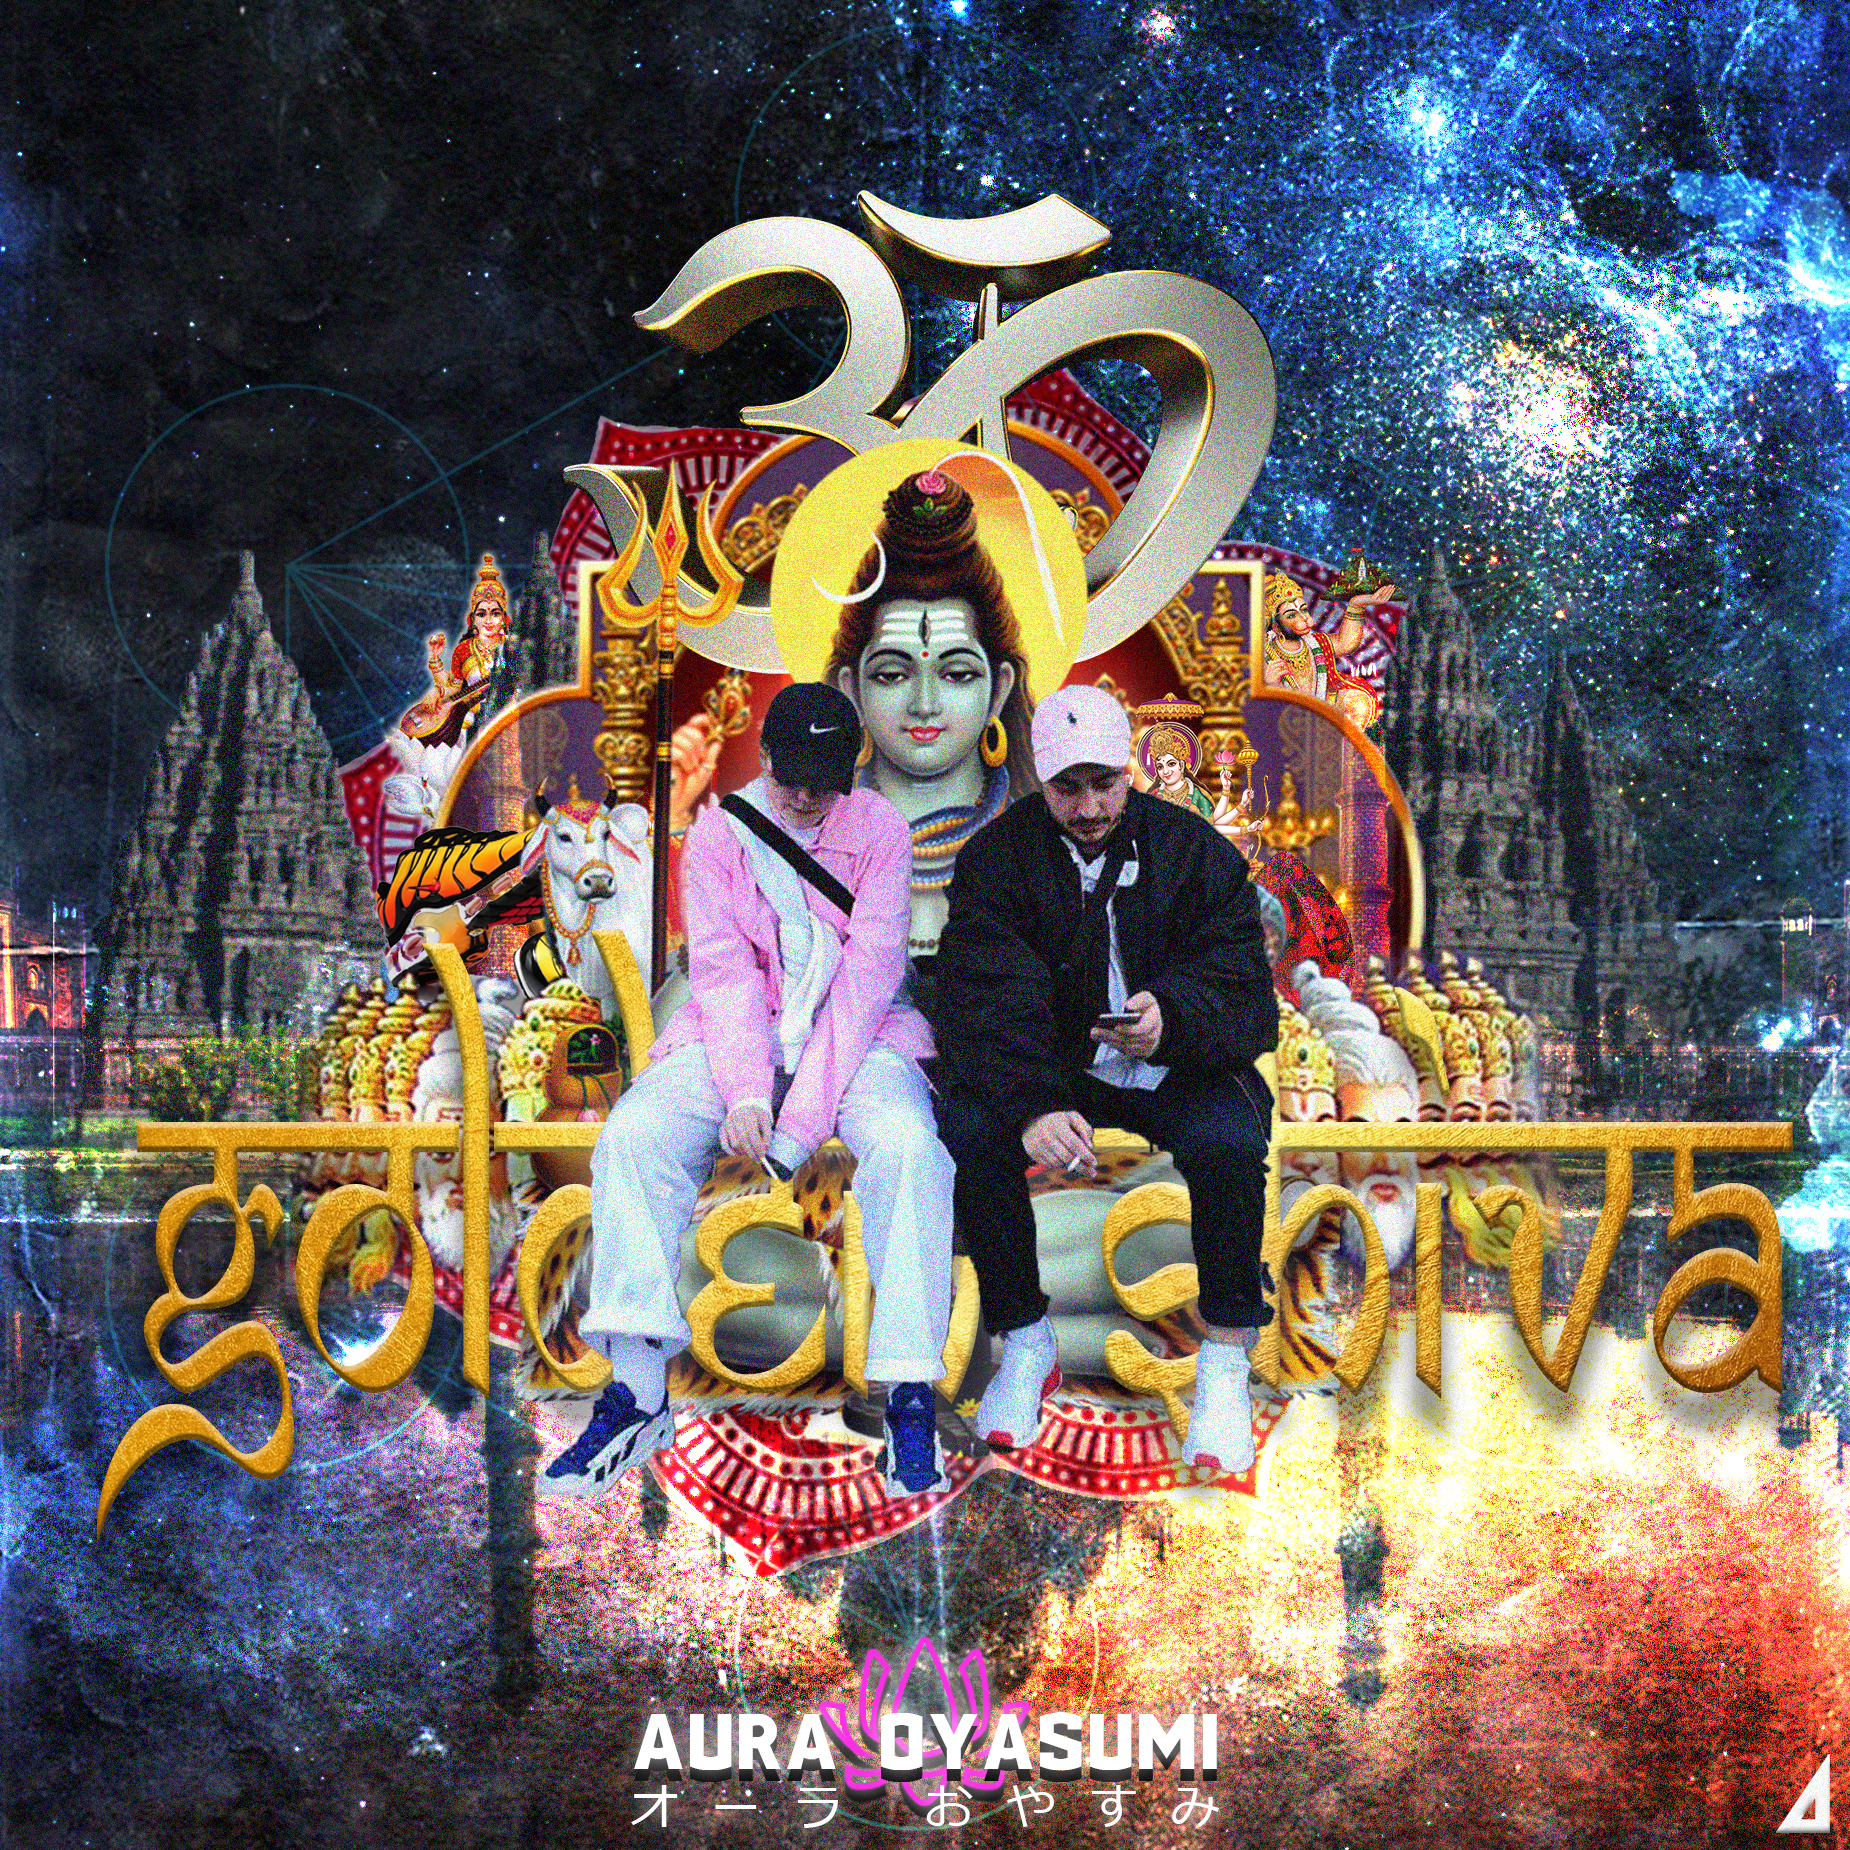 Aura Oyasumi - Golden Shiva_cover.jpg